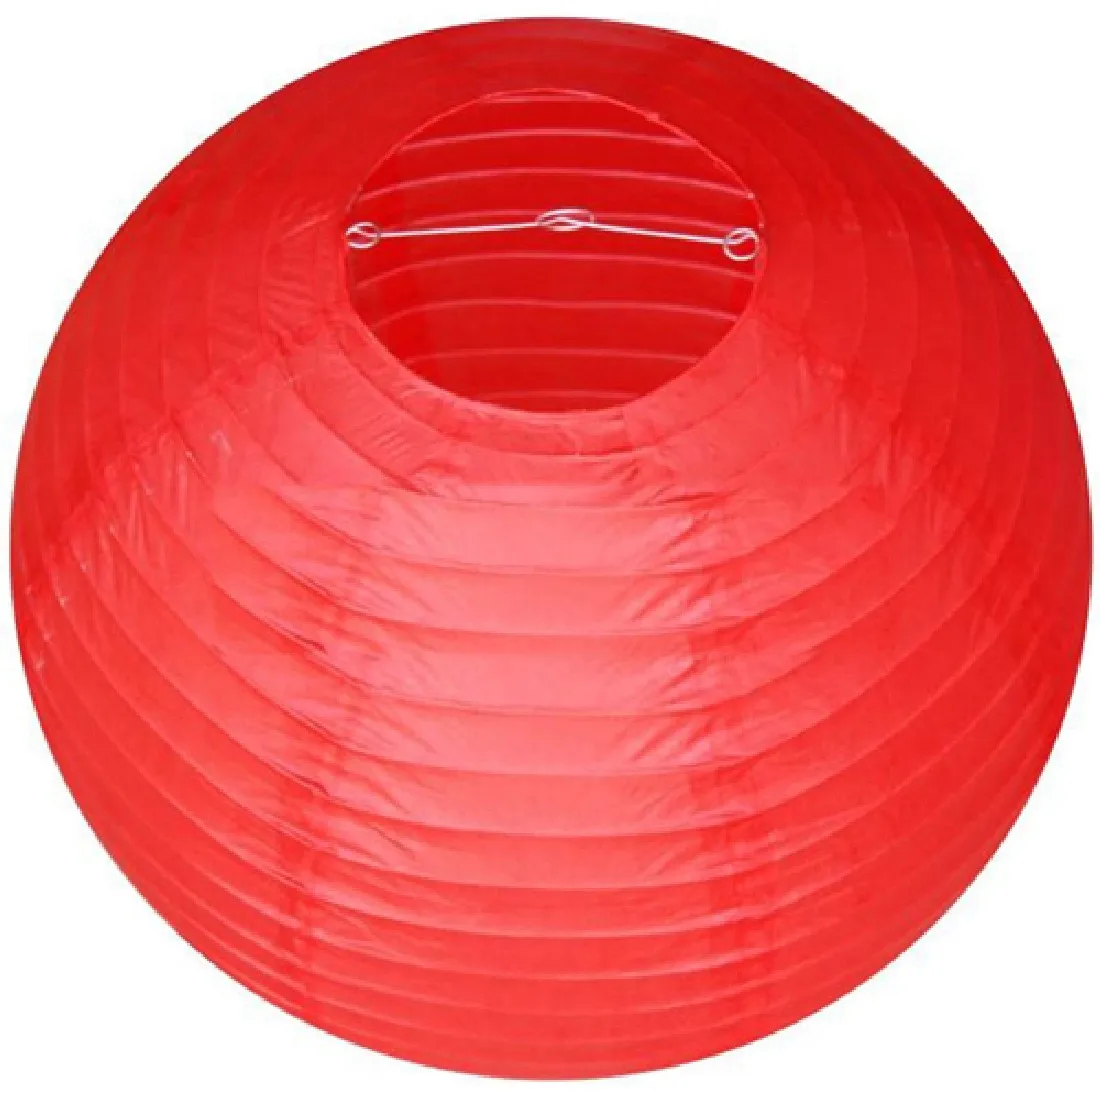 Бумажный светильник шар 2" 50 см традиционное китайское круглое бумажные фонарики для свадьбы День рождения украшения поставка - Испускаемый цвет: Burgundy